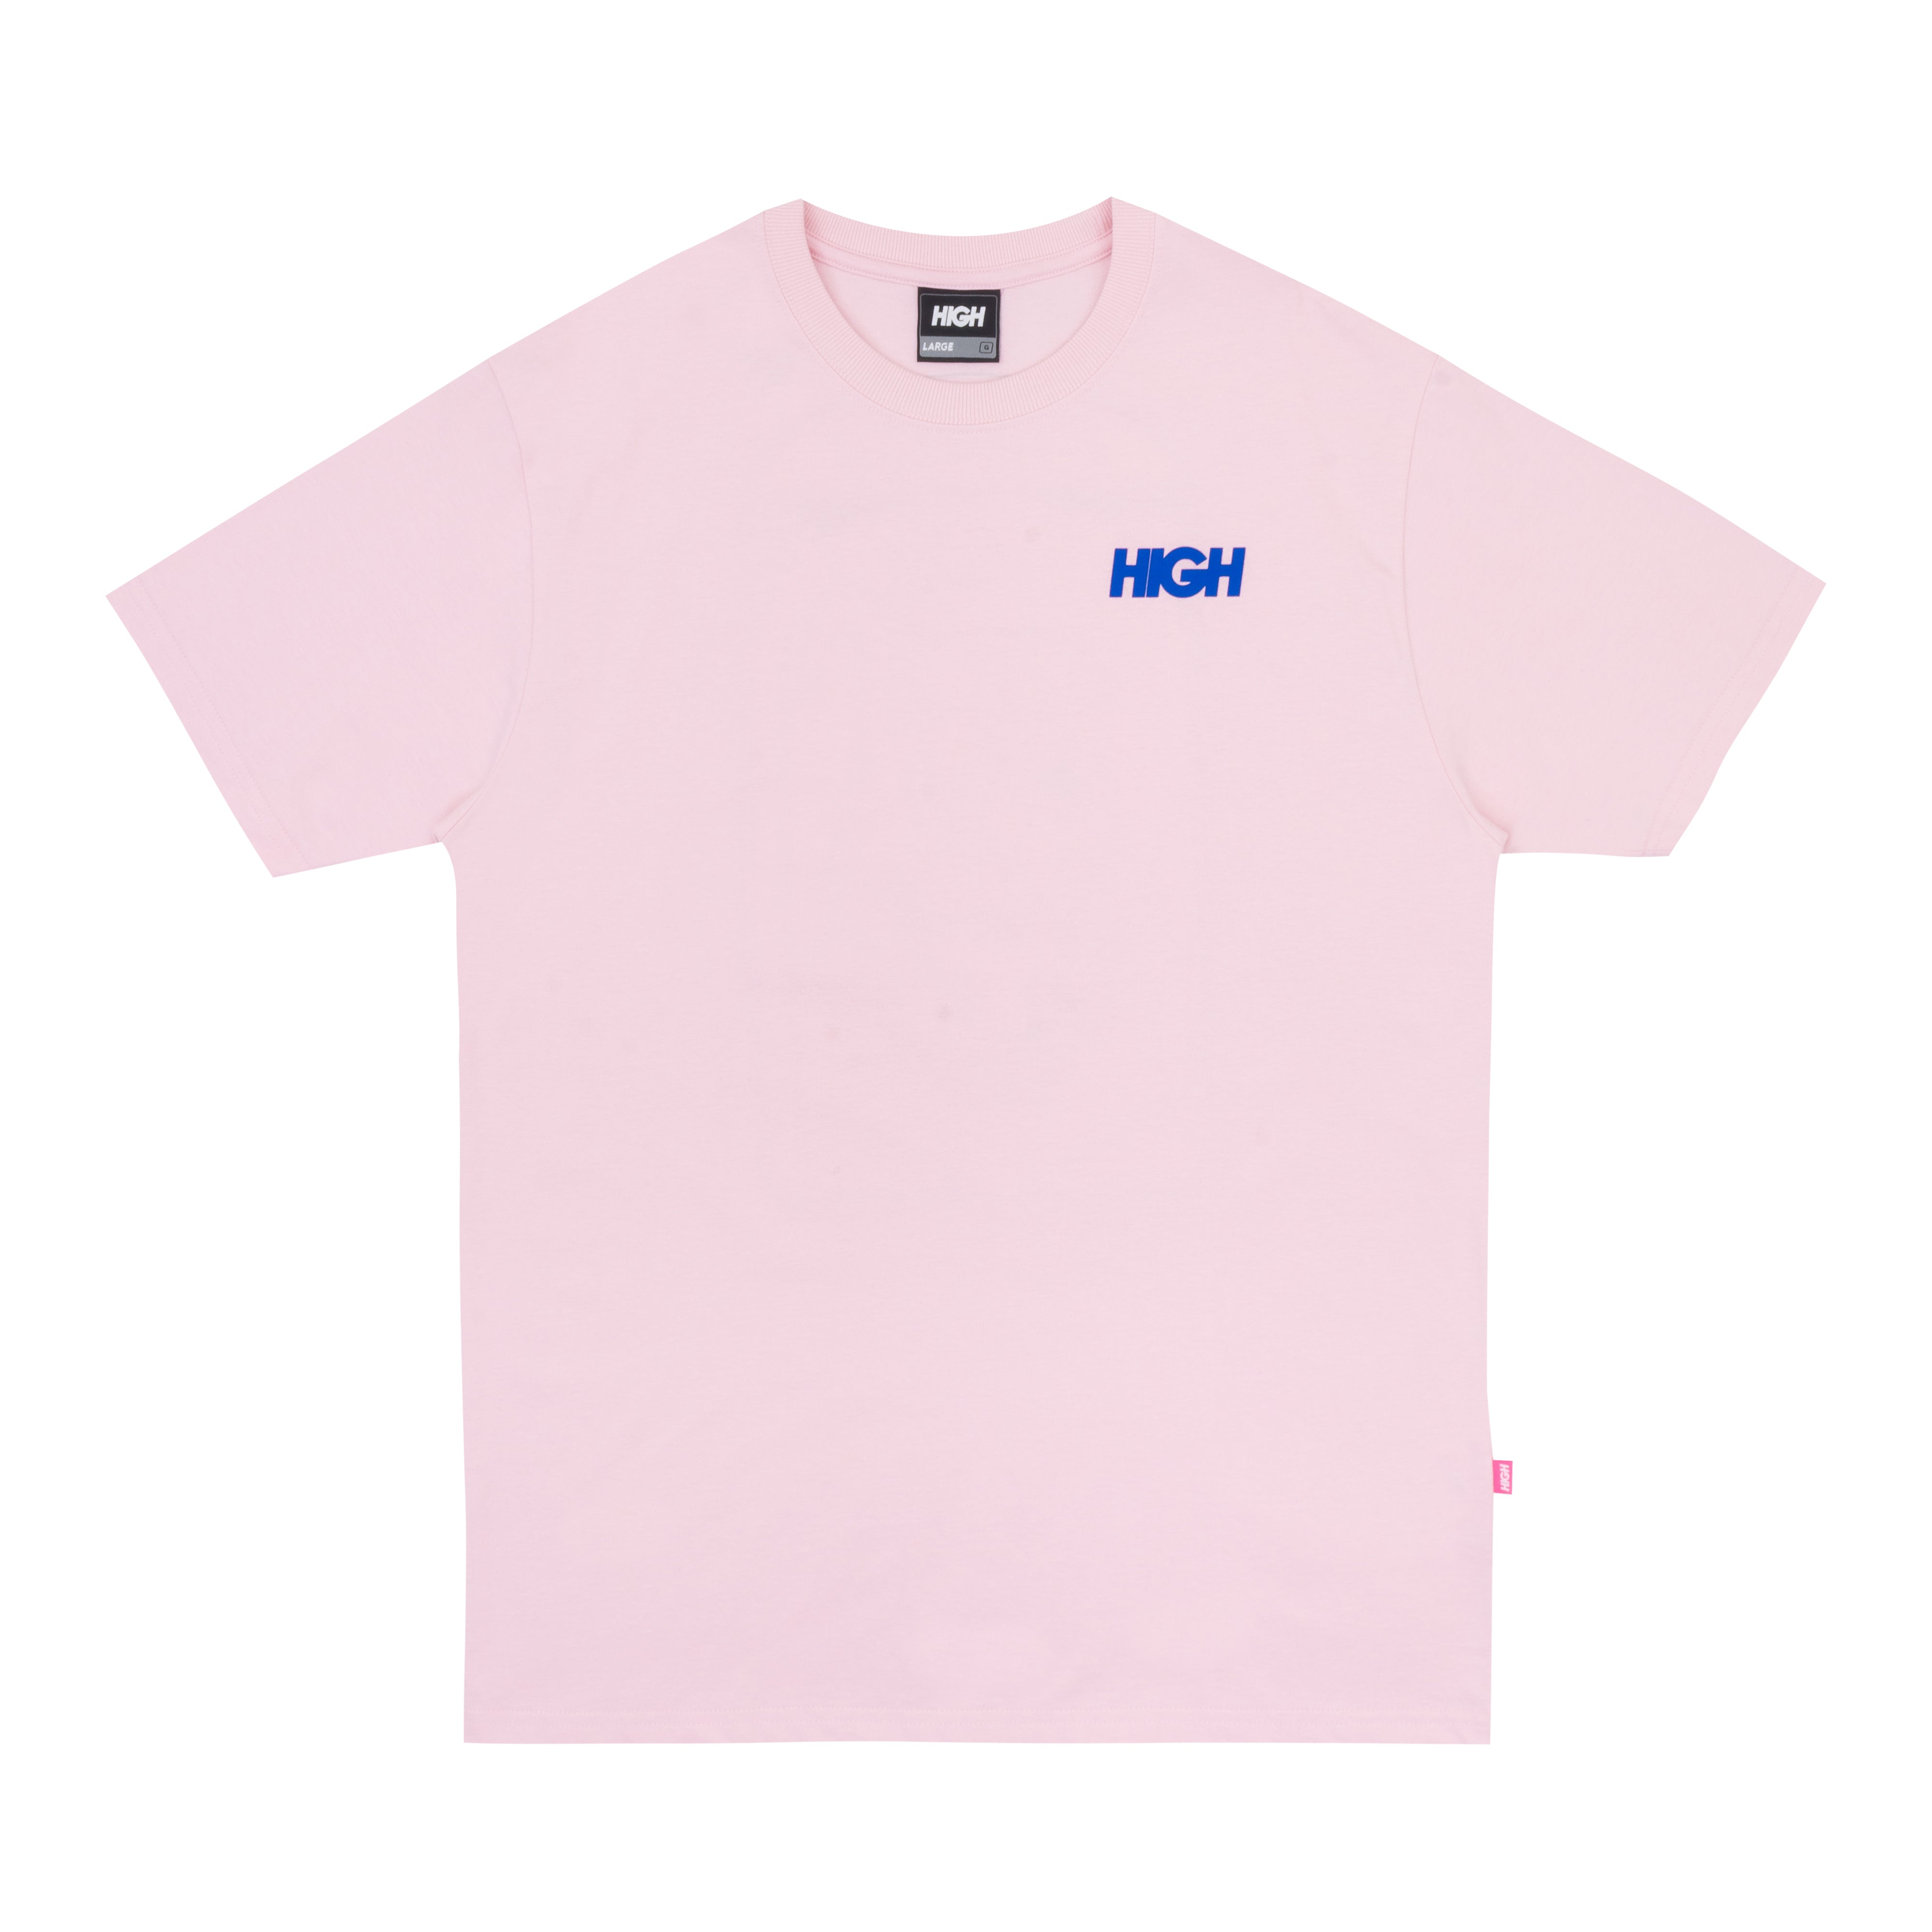 HIGH - Camiseta Pinball Pink